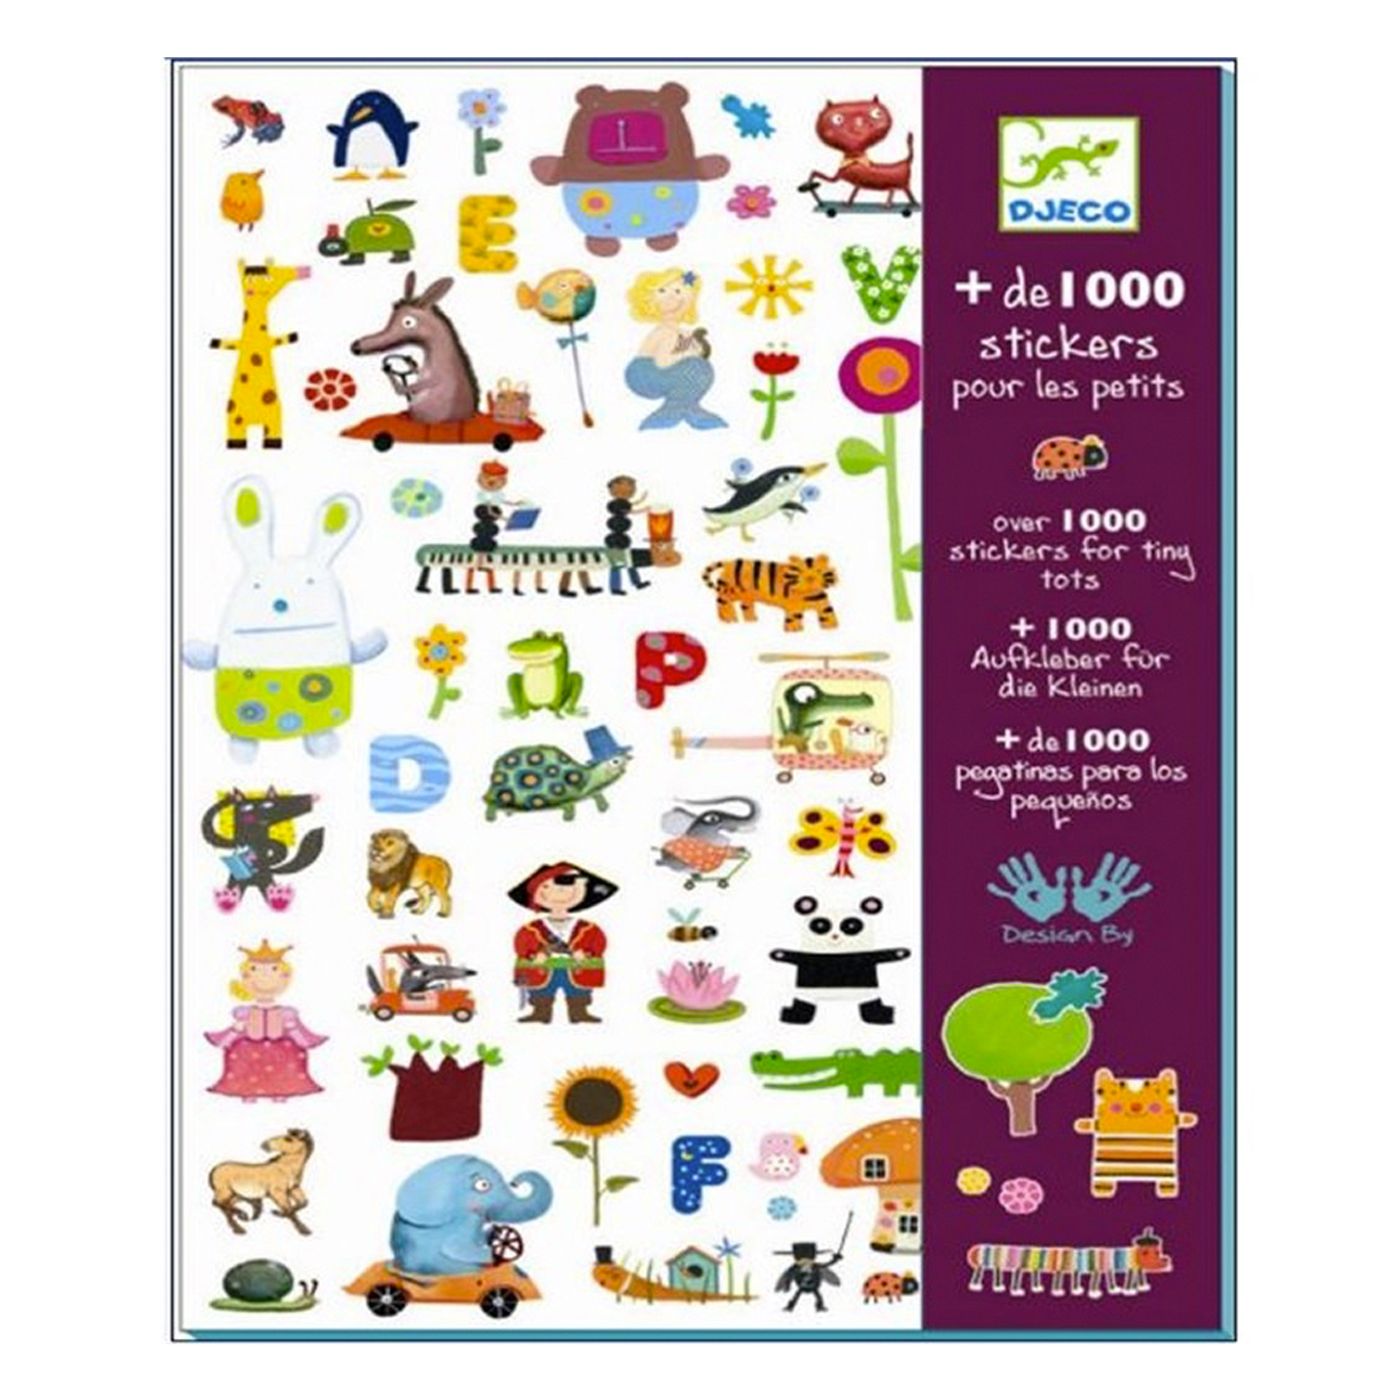 DJECO Djeco Çıkartmalar / 1000 Stickers For Little Ones